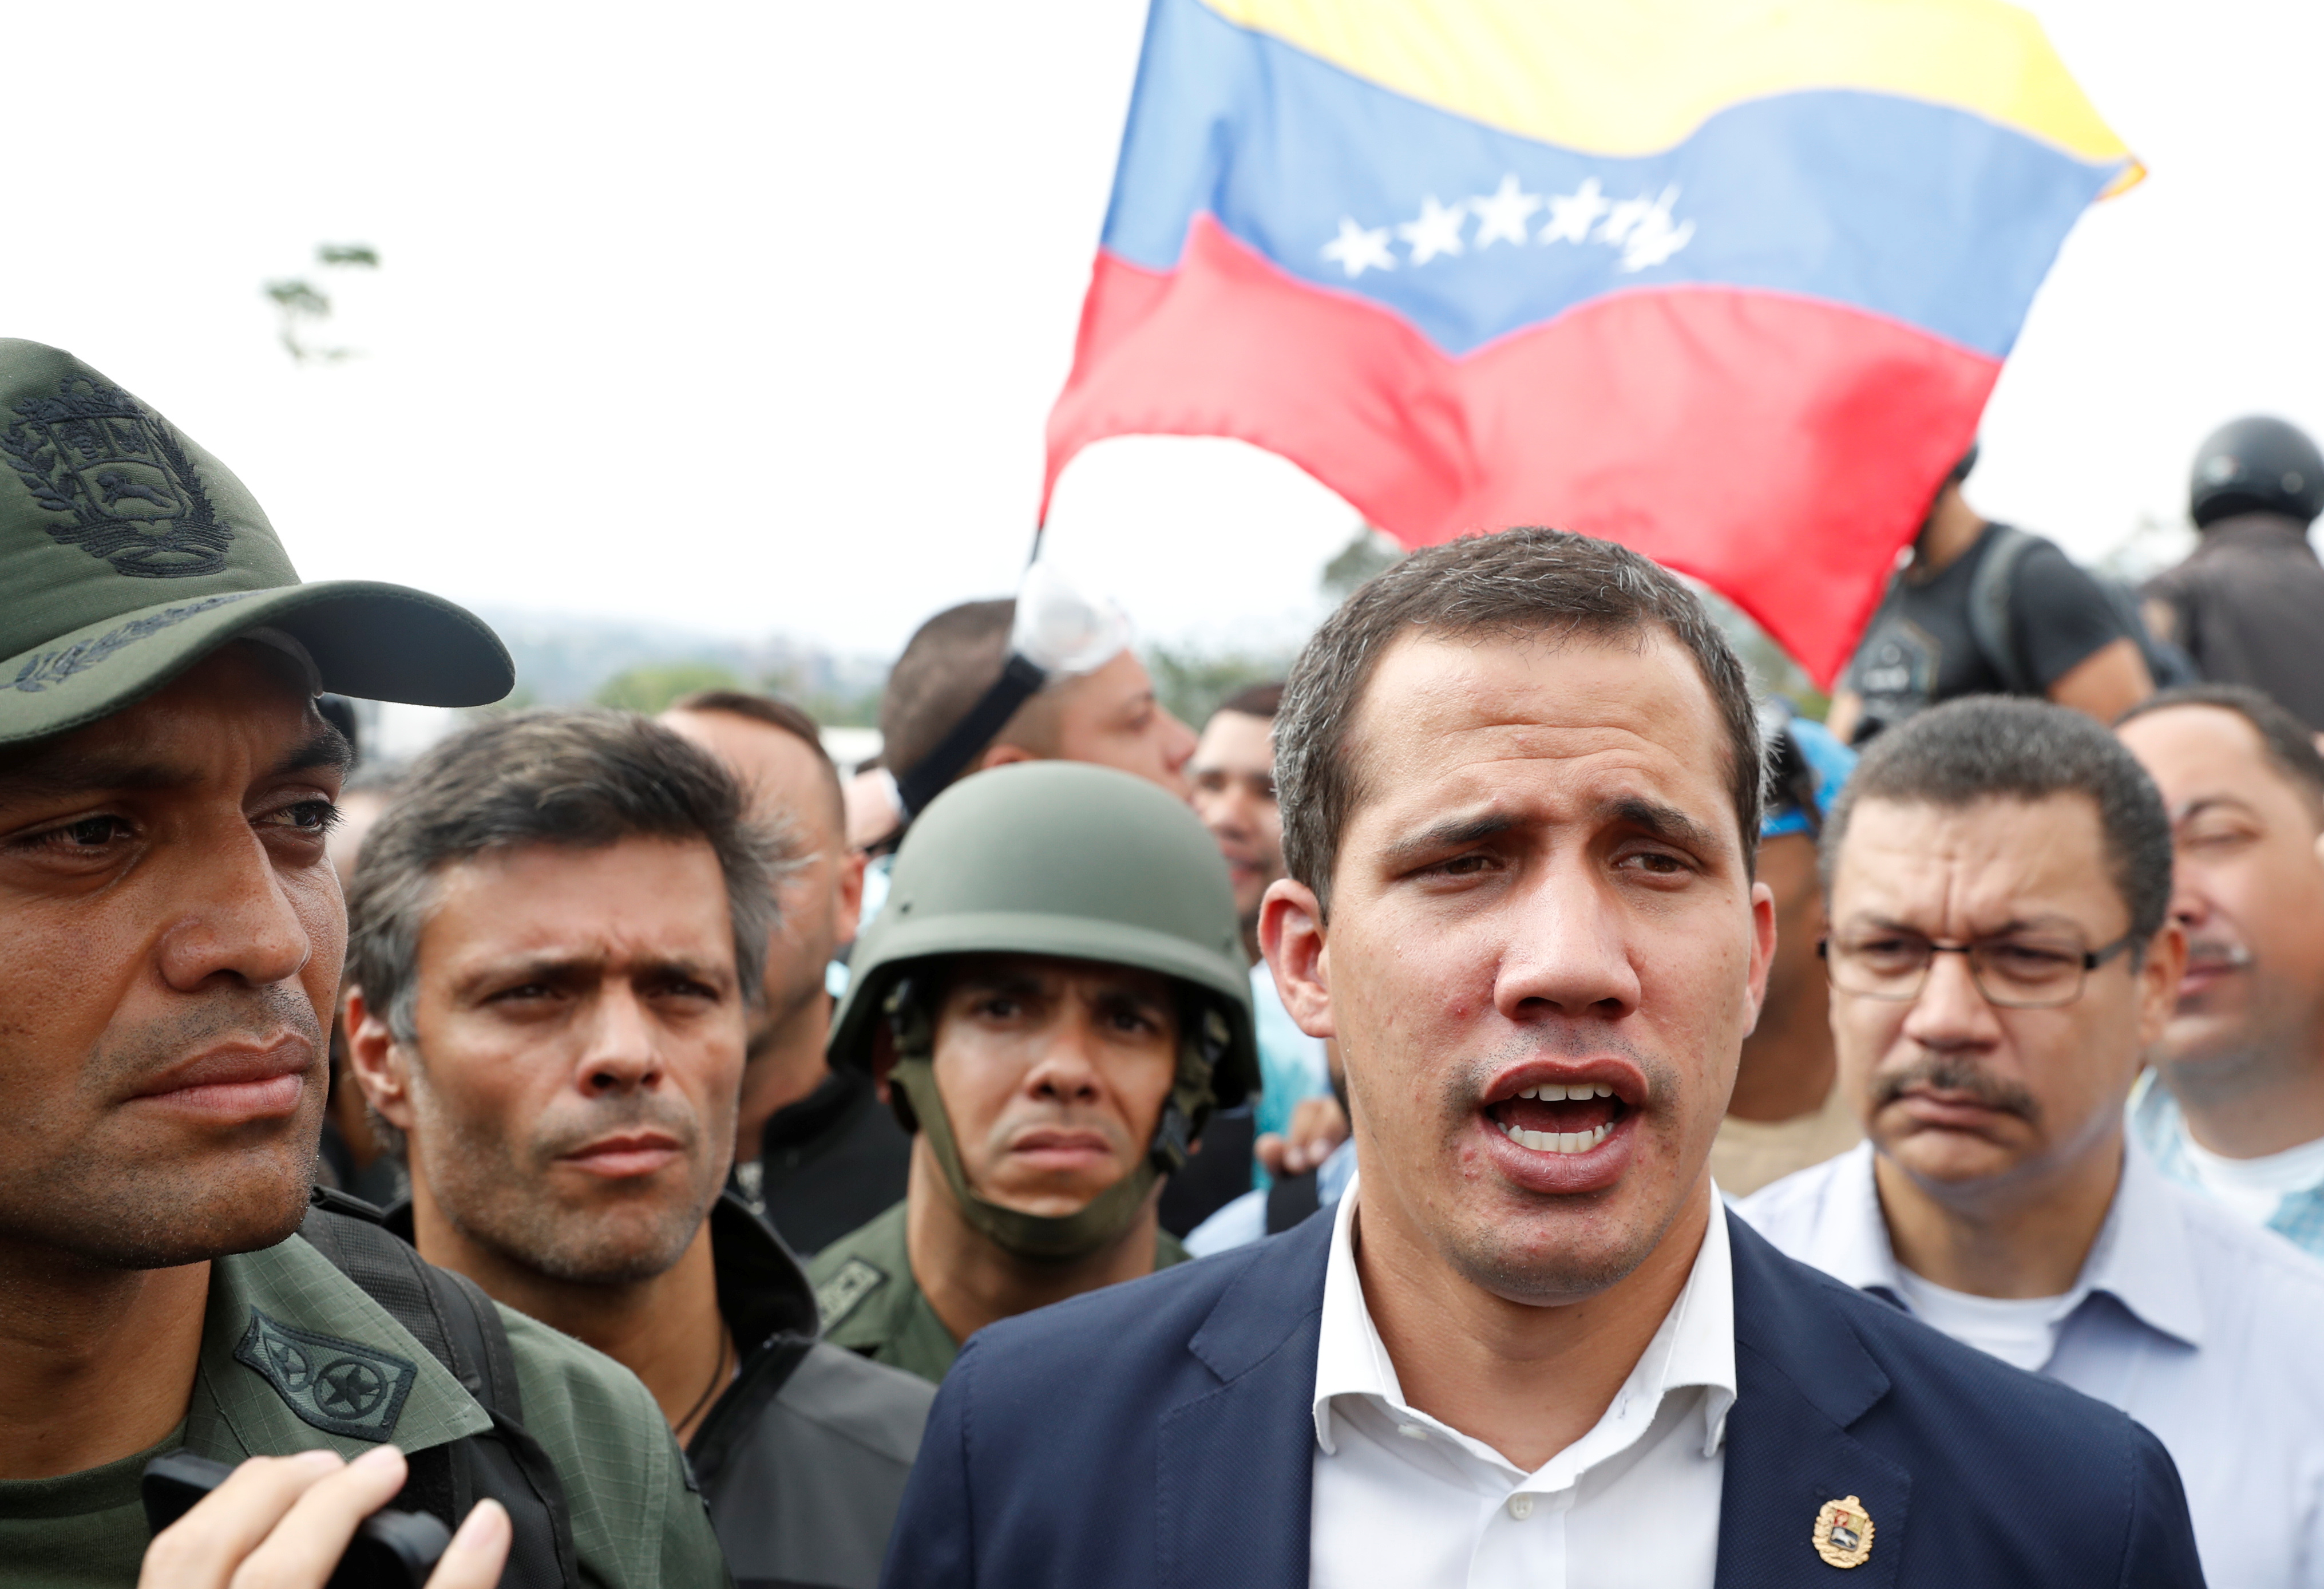 El mundo reacciona al levantamiento de militares en Venezuela